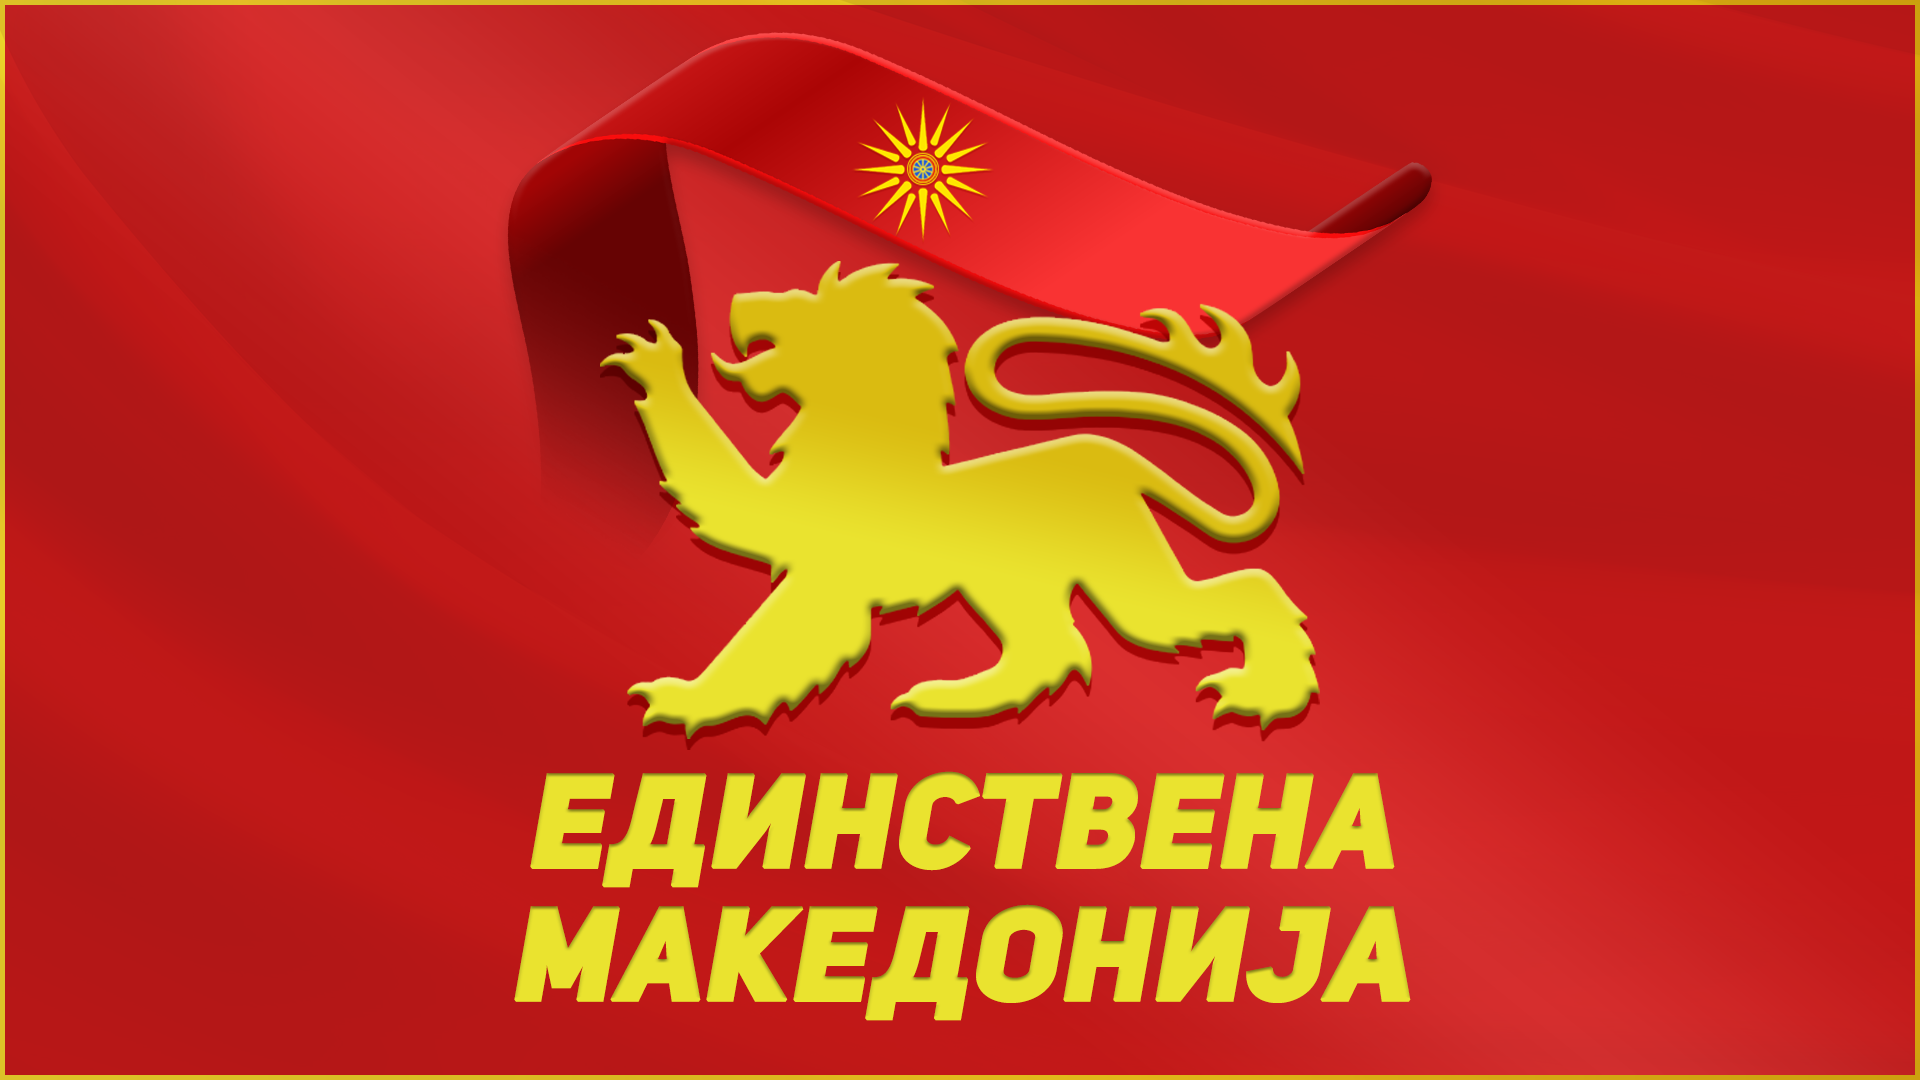 Единствена Македонија: Средбата кај Ковачевски е приватен собир, Македонците не се прашање за една влада или партија туку на македонскиот народ 